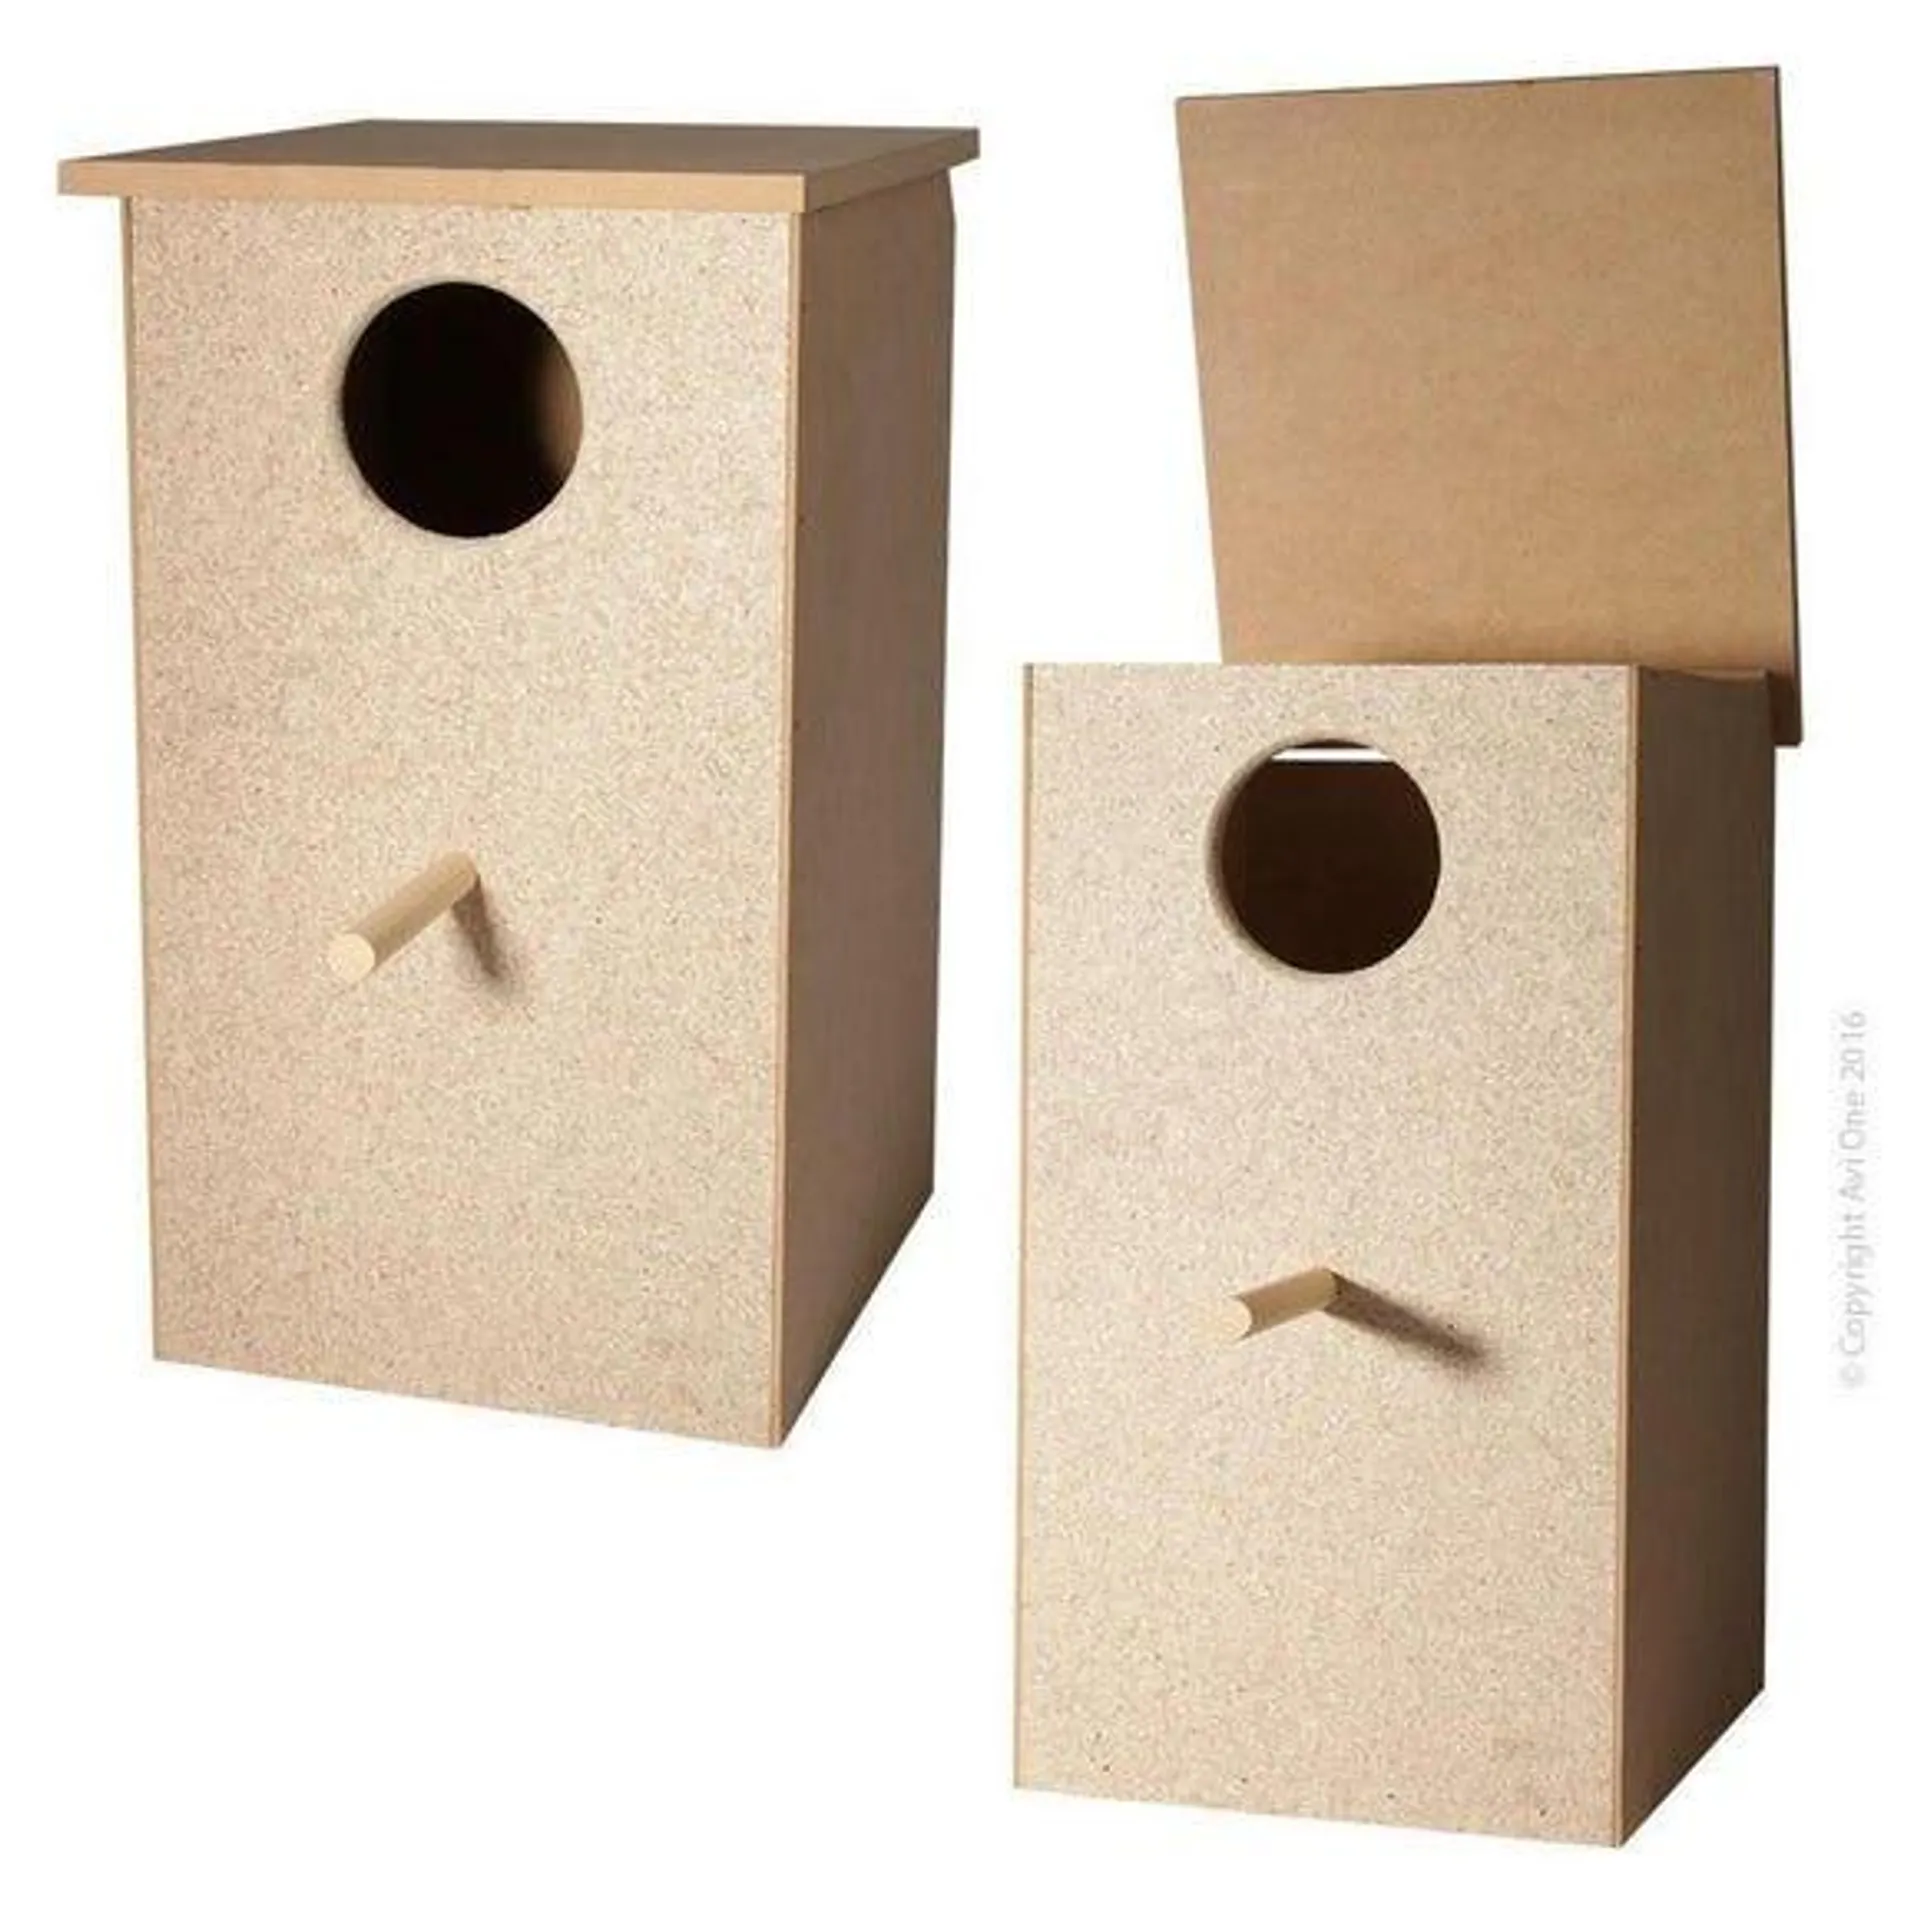 AVIONE Wooden L Parrot Nest Box 26x28.5x29.5cm